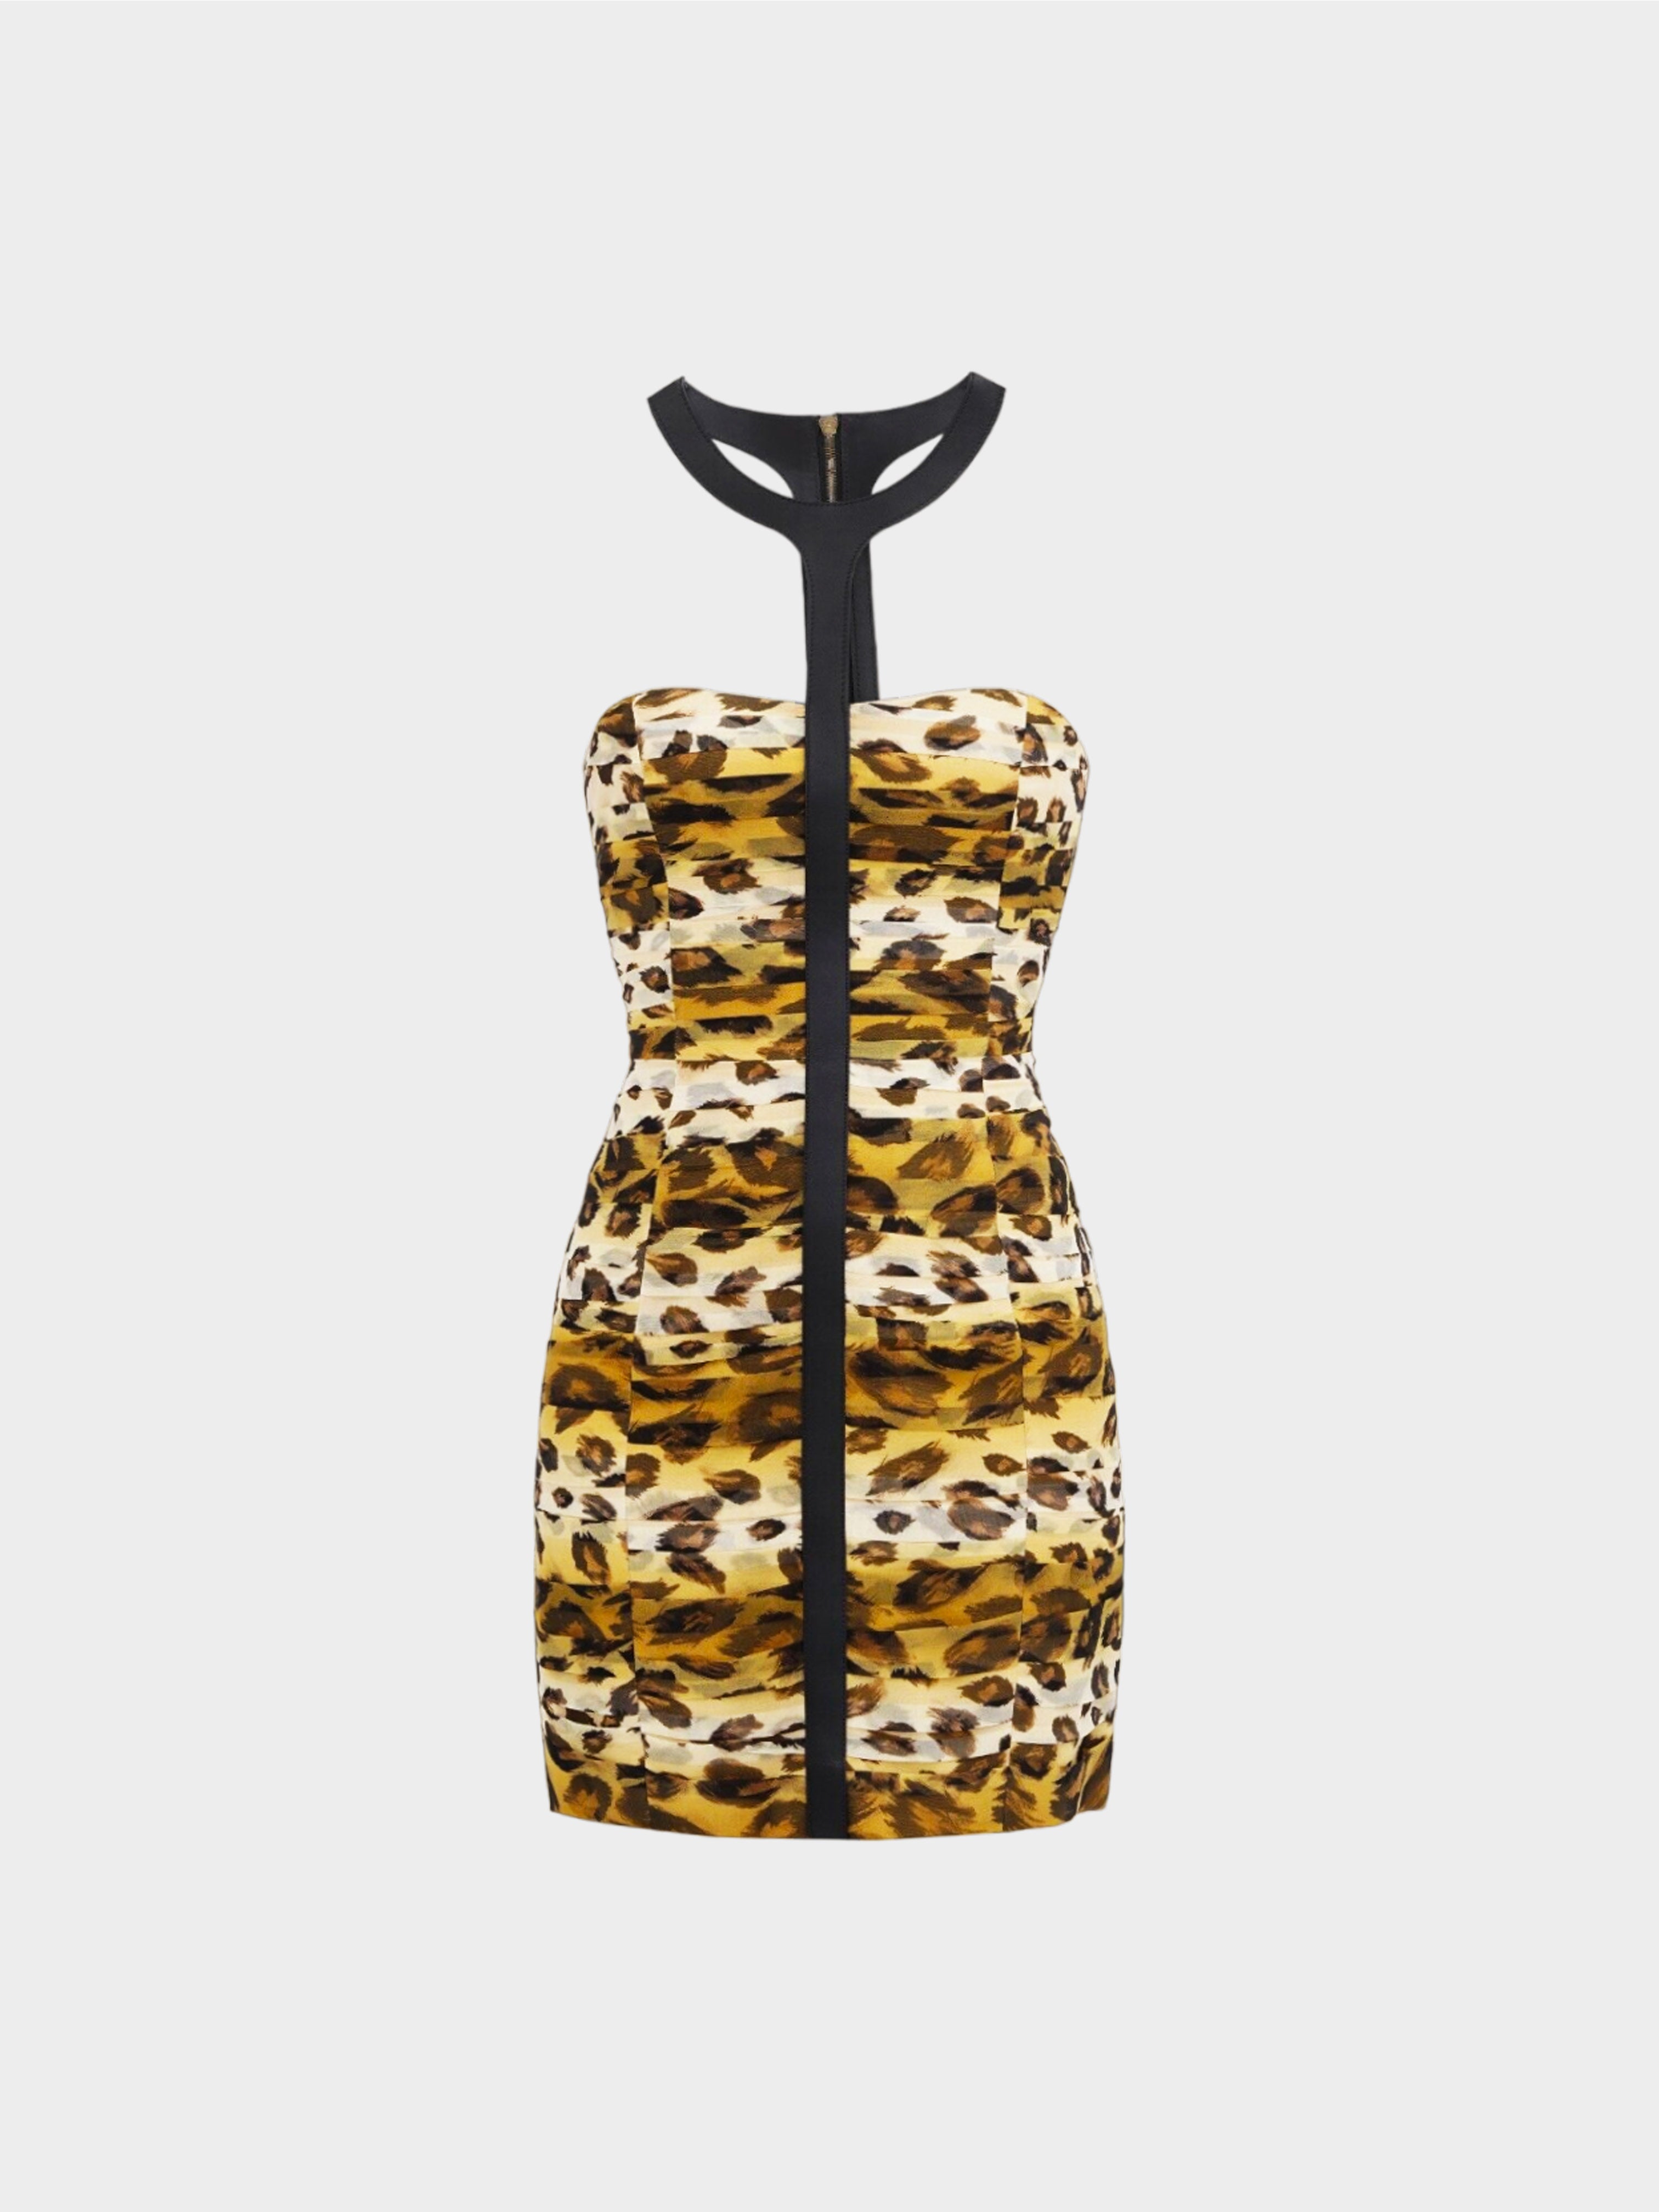 Burberry SS 2011 Prorsum Runway Leopard Print Silk Dress